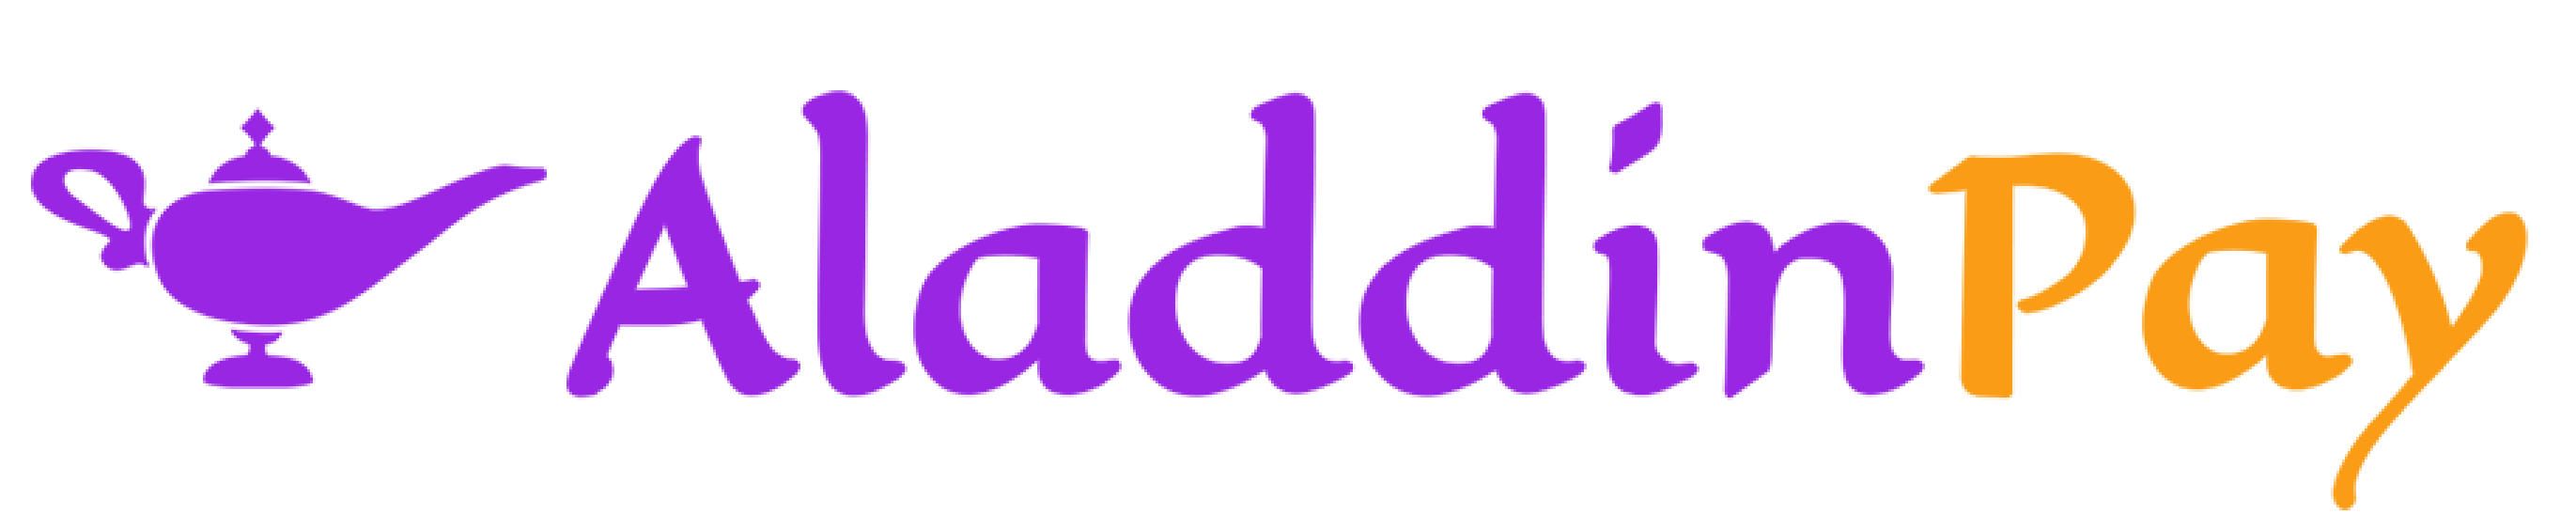 AladdinPay Logo